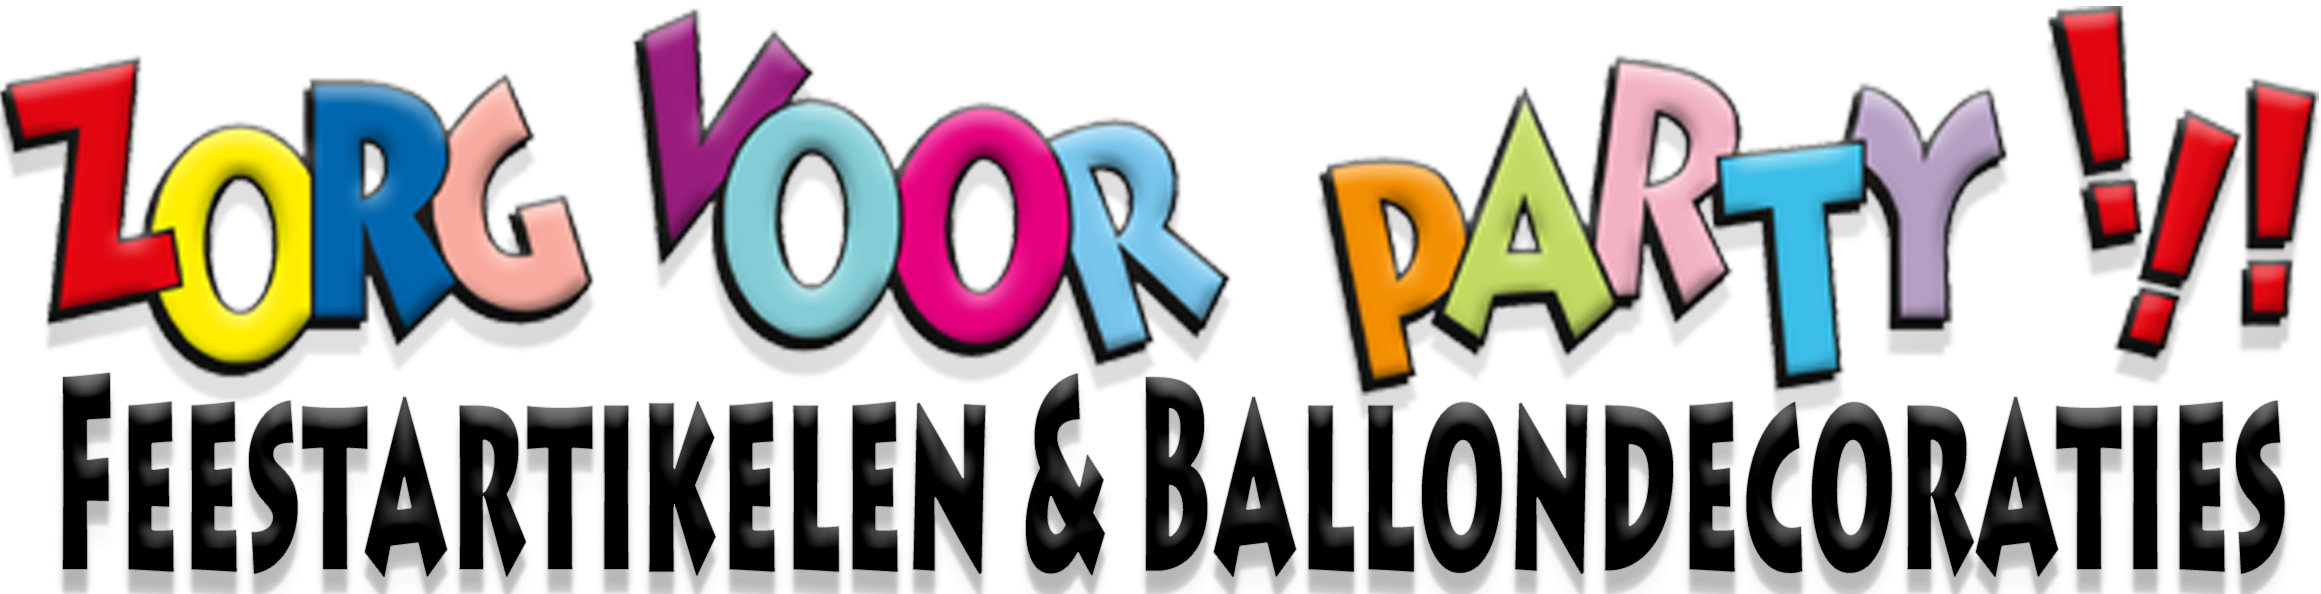 Zorg voor Party online feestartikelen en ballondecoraties